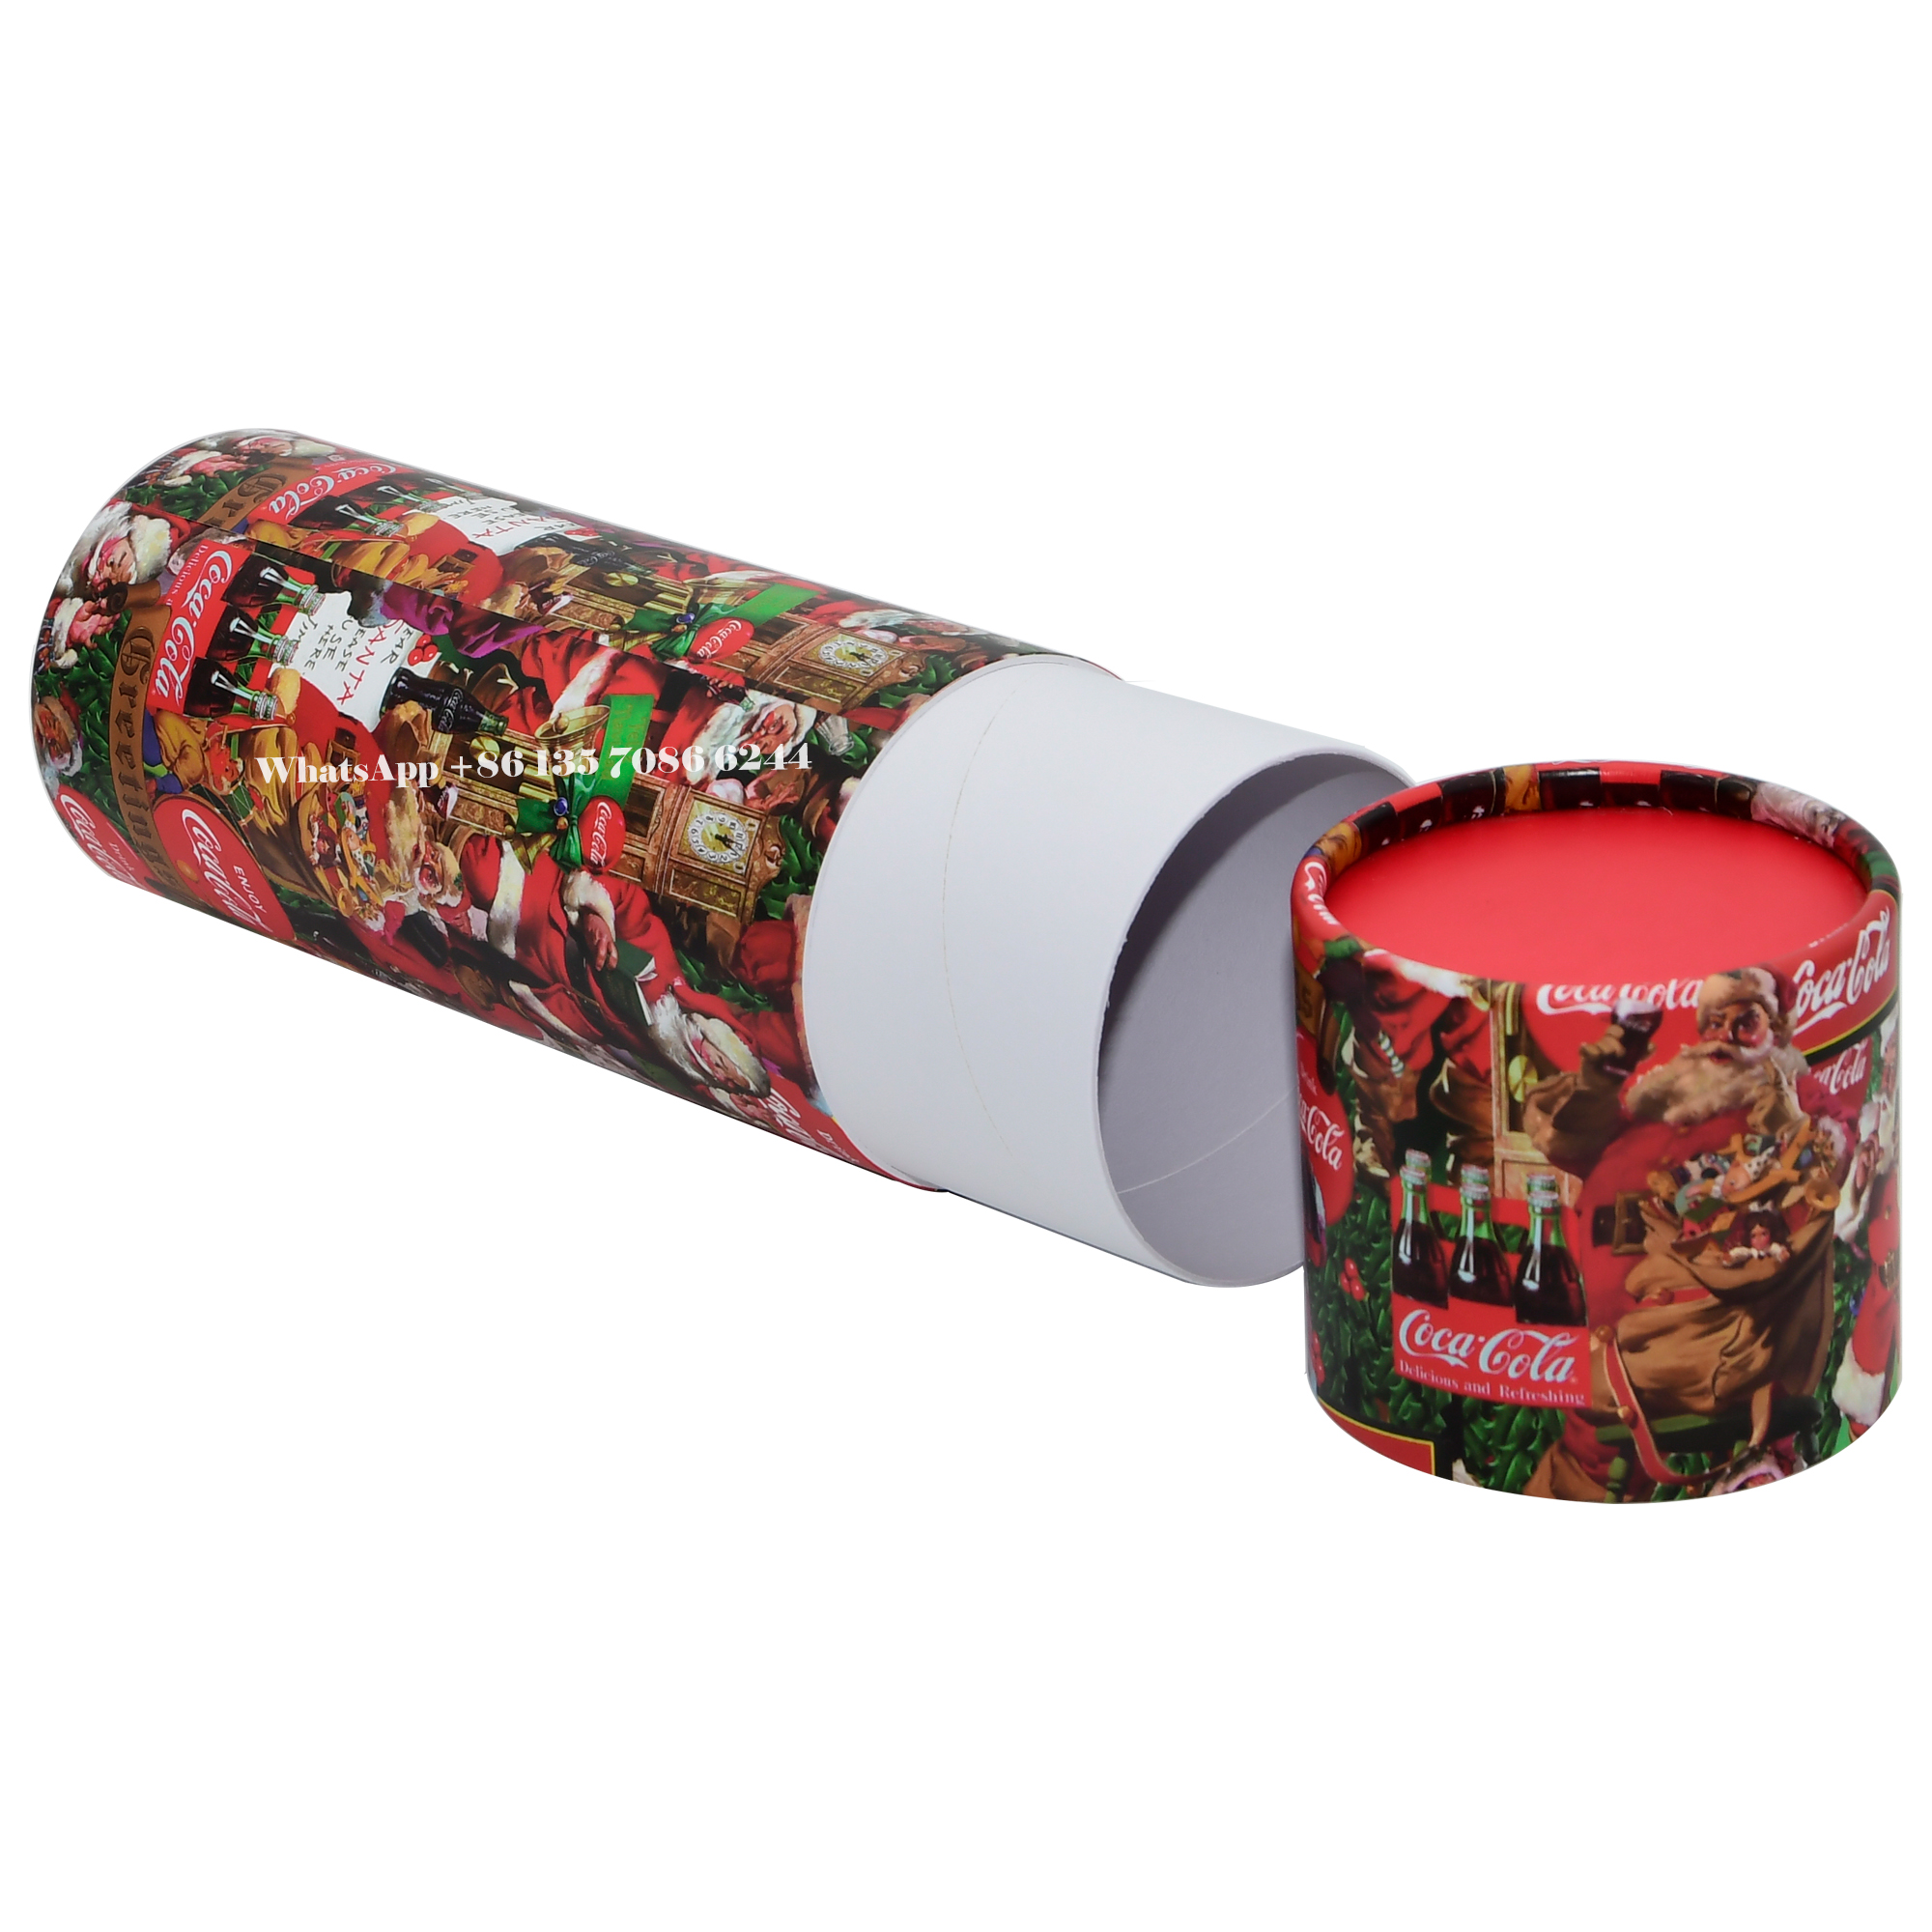  賑やかなクリスマスエディションのコカ・コーラ ペーパーチューブパッケージングボックス  